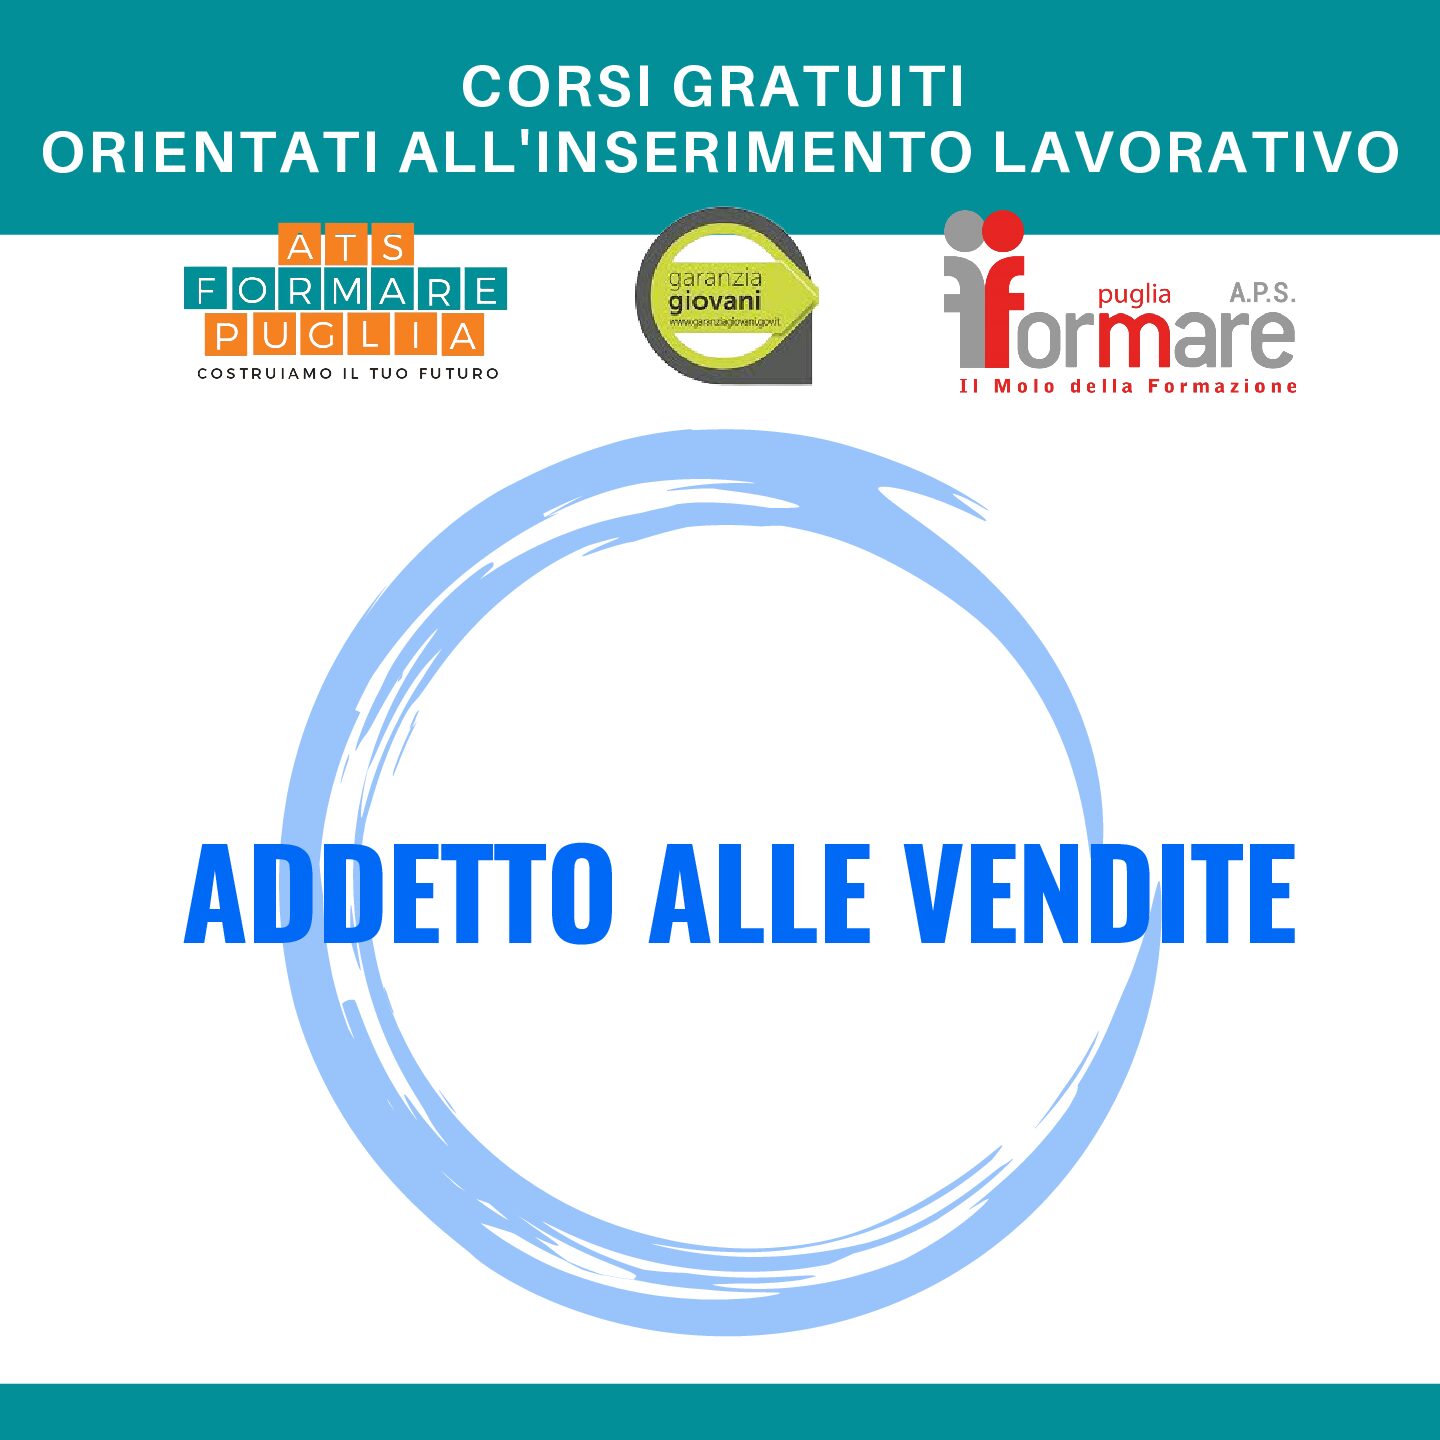 https://www.formarepuglia.com/wp-content/uploads/2022/12/CORSI-GRATUITI-ORIENTATI-ALLINSERIMENTO-LAVORATIVO-3-pdf.jpg